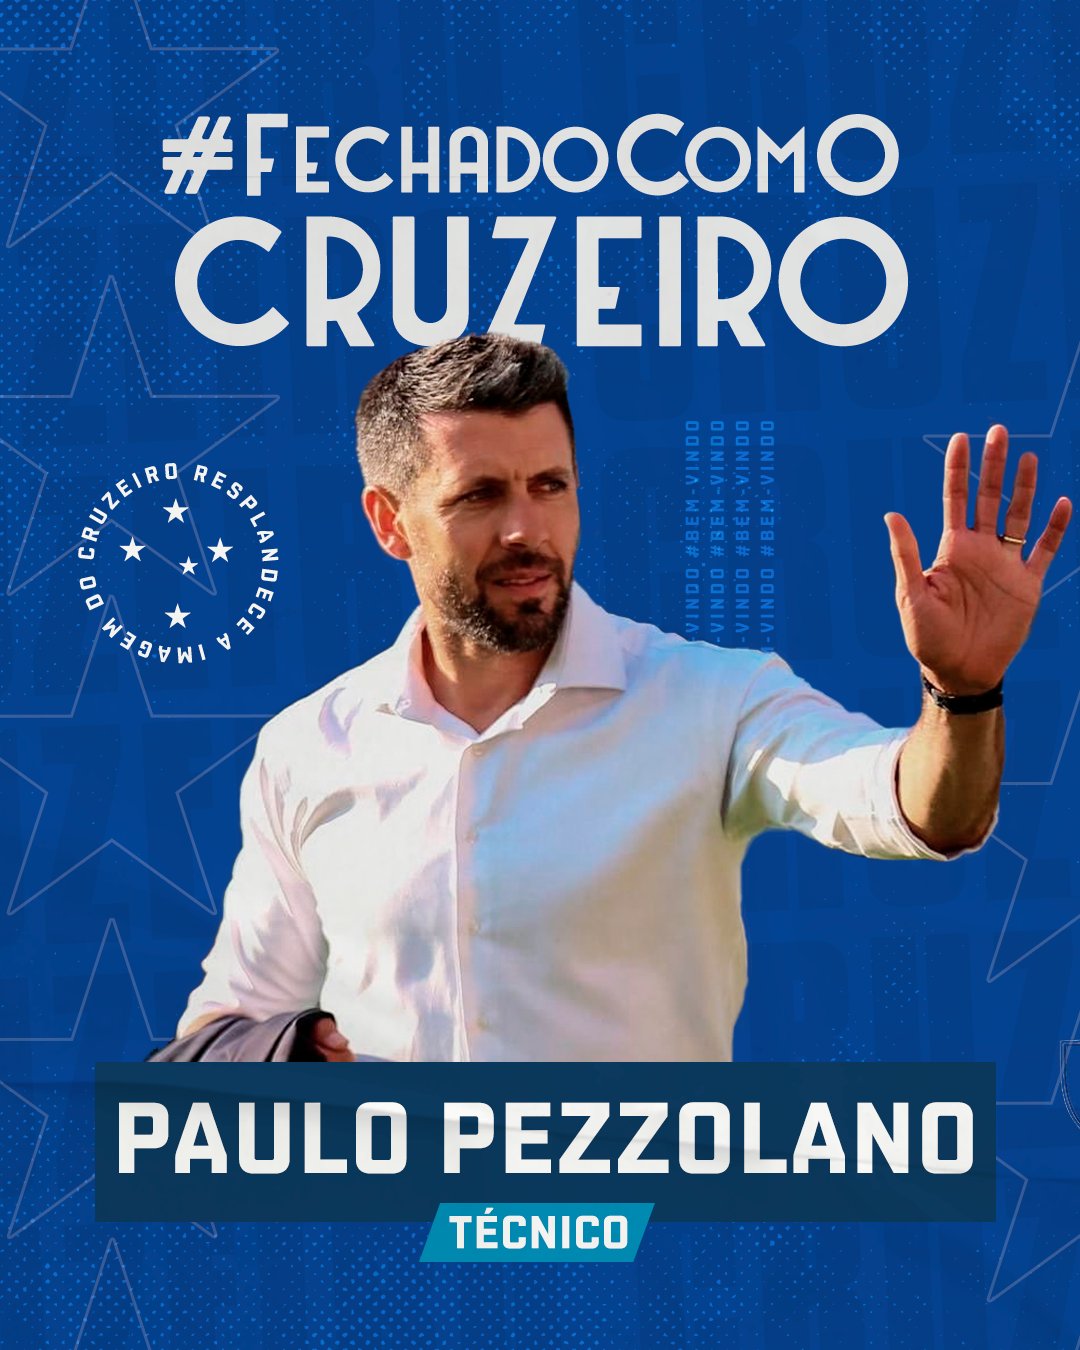 Pezzolano chega a 40 jogos no comando do Cruzeiro